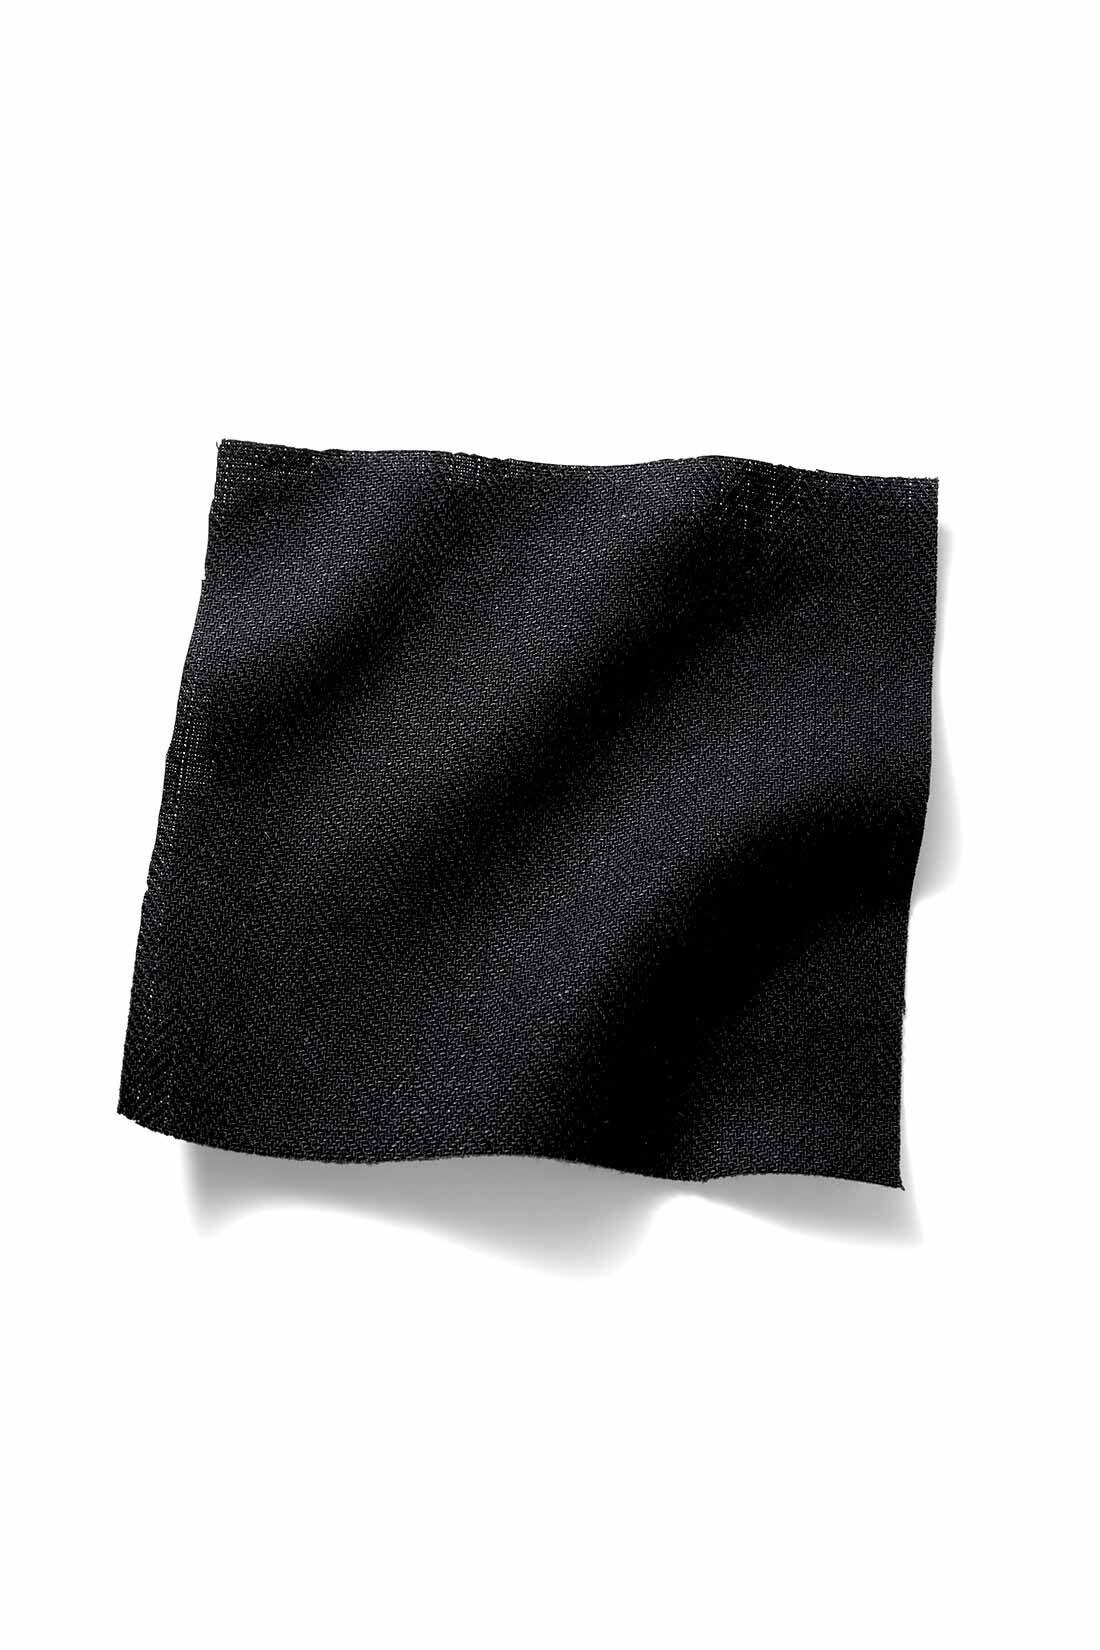 MEDE19F|MEDE19F　綿麻へリンボーン素材のダブルウエストパンツ〈ブラック〉|ほどよい厚みでこなれ感のある、綿麻ヘリンボーン織り素材。